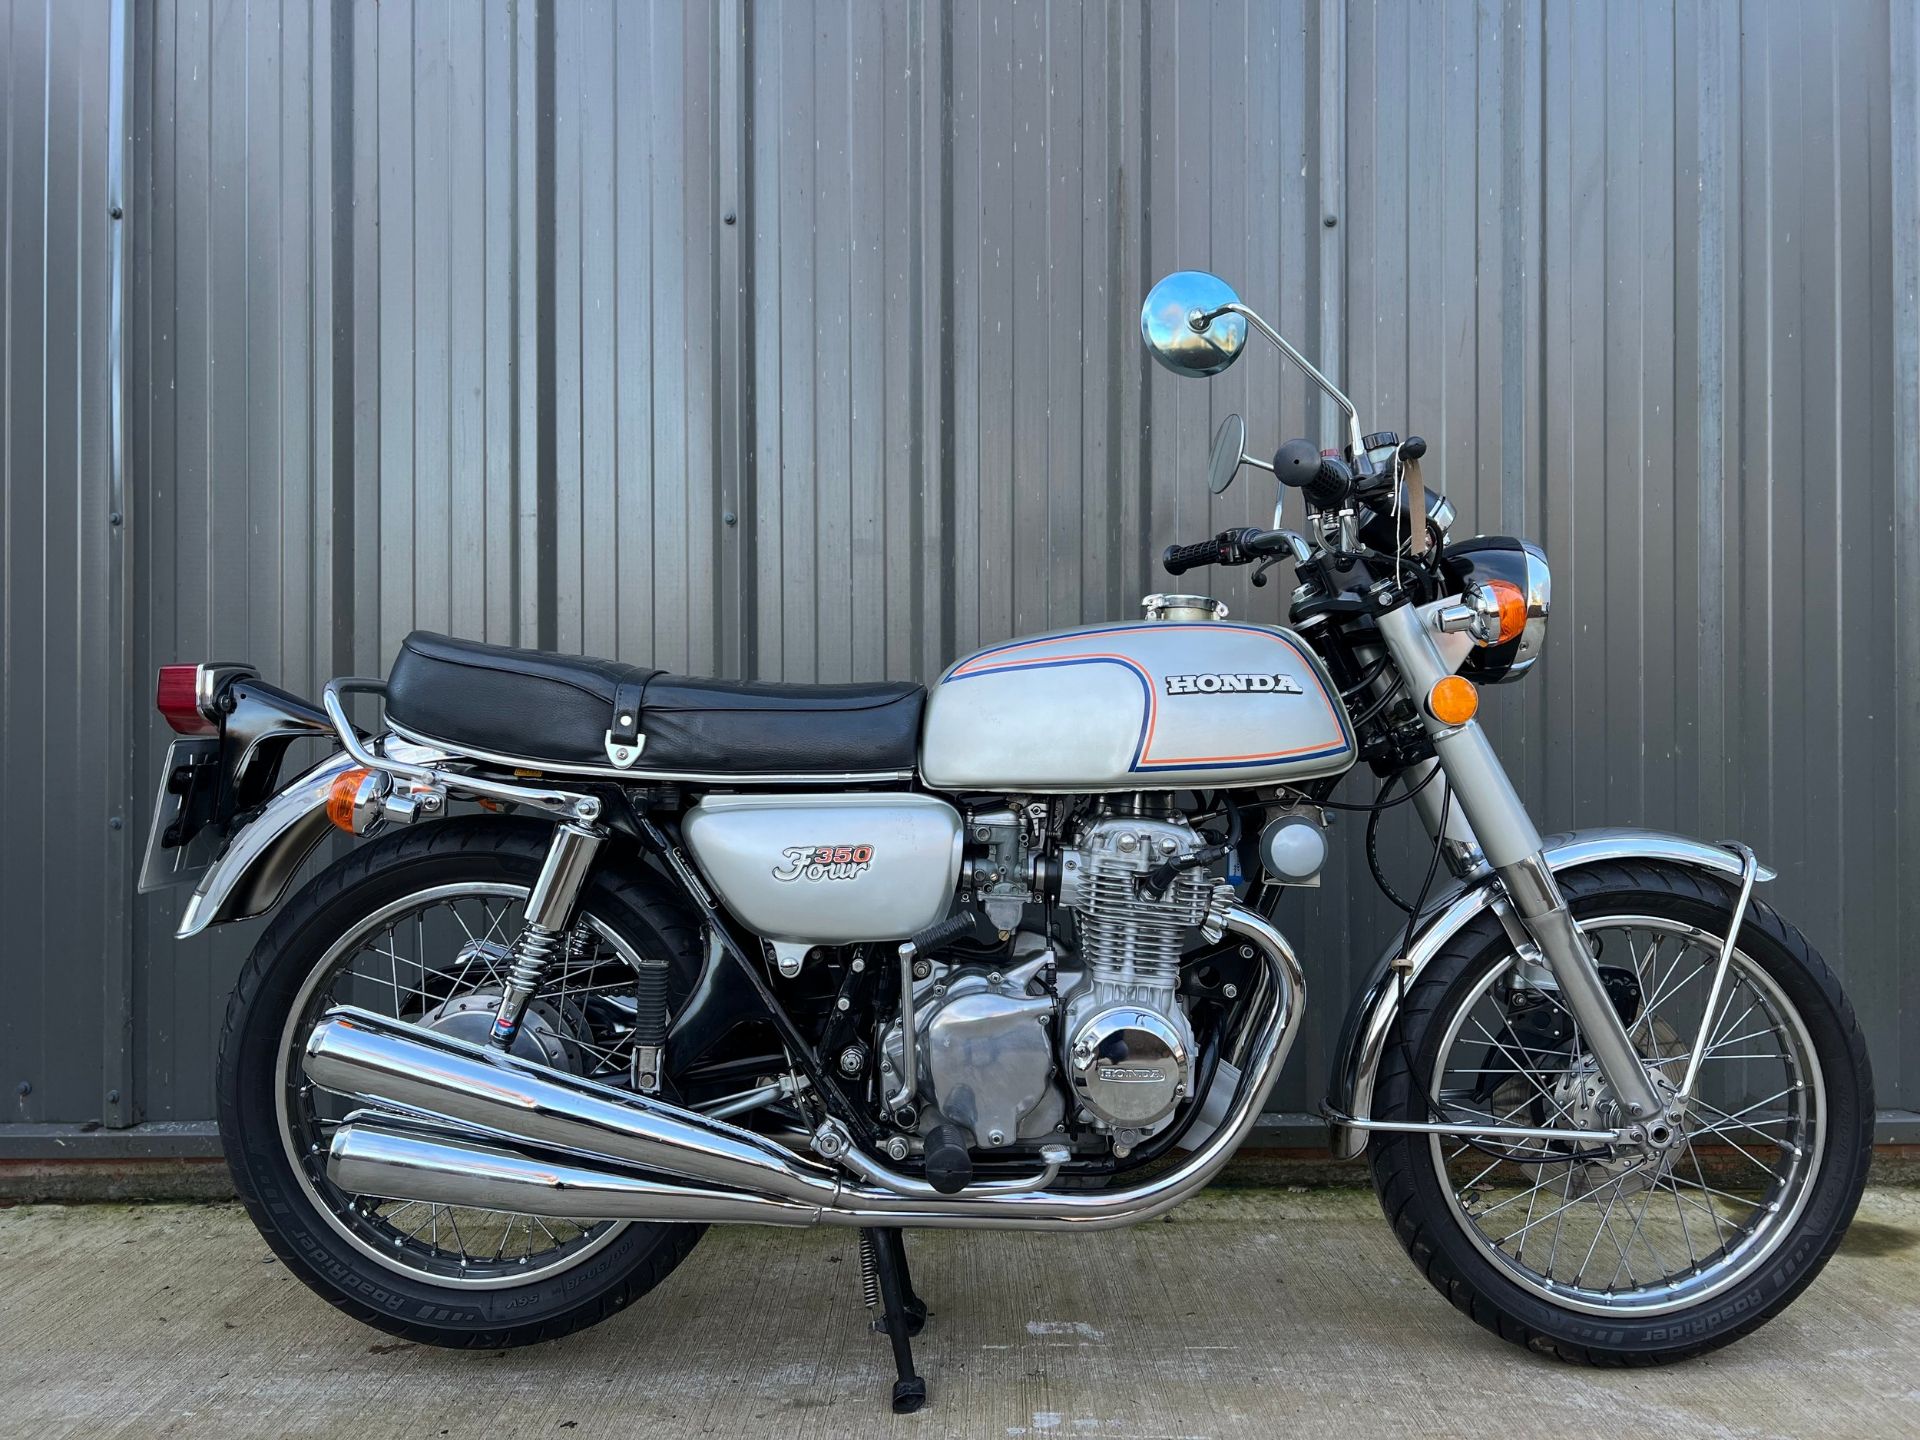 Honda CB 350 Four motorcycle. 1973. 347cc Frame No. 1048198 Engine No. 1048244 Property of a